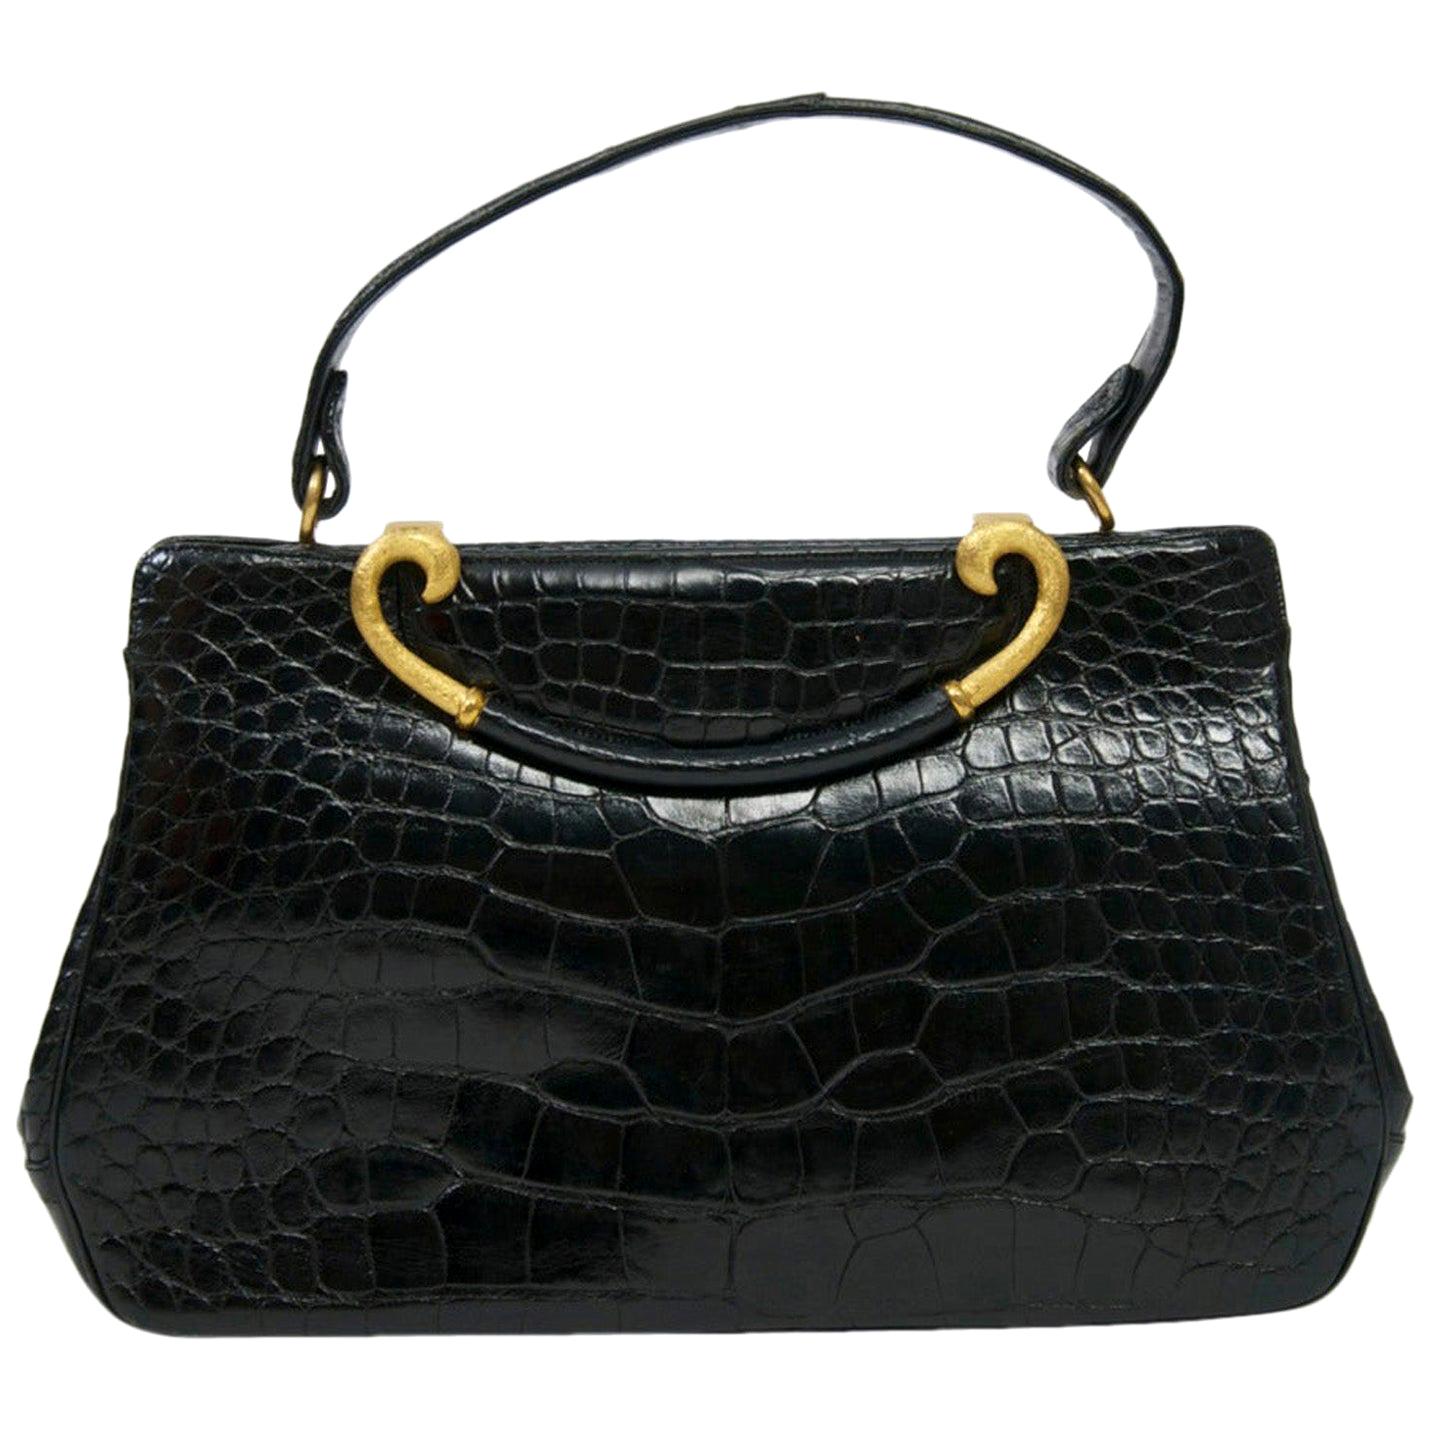 Rosenfeld 1960s Black Faux Alligator Handbag